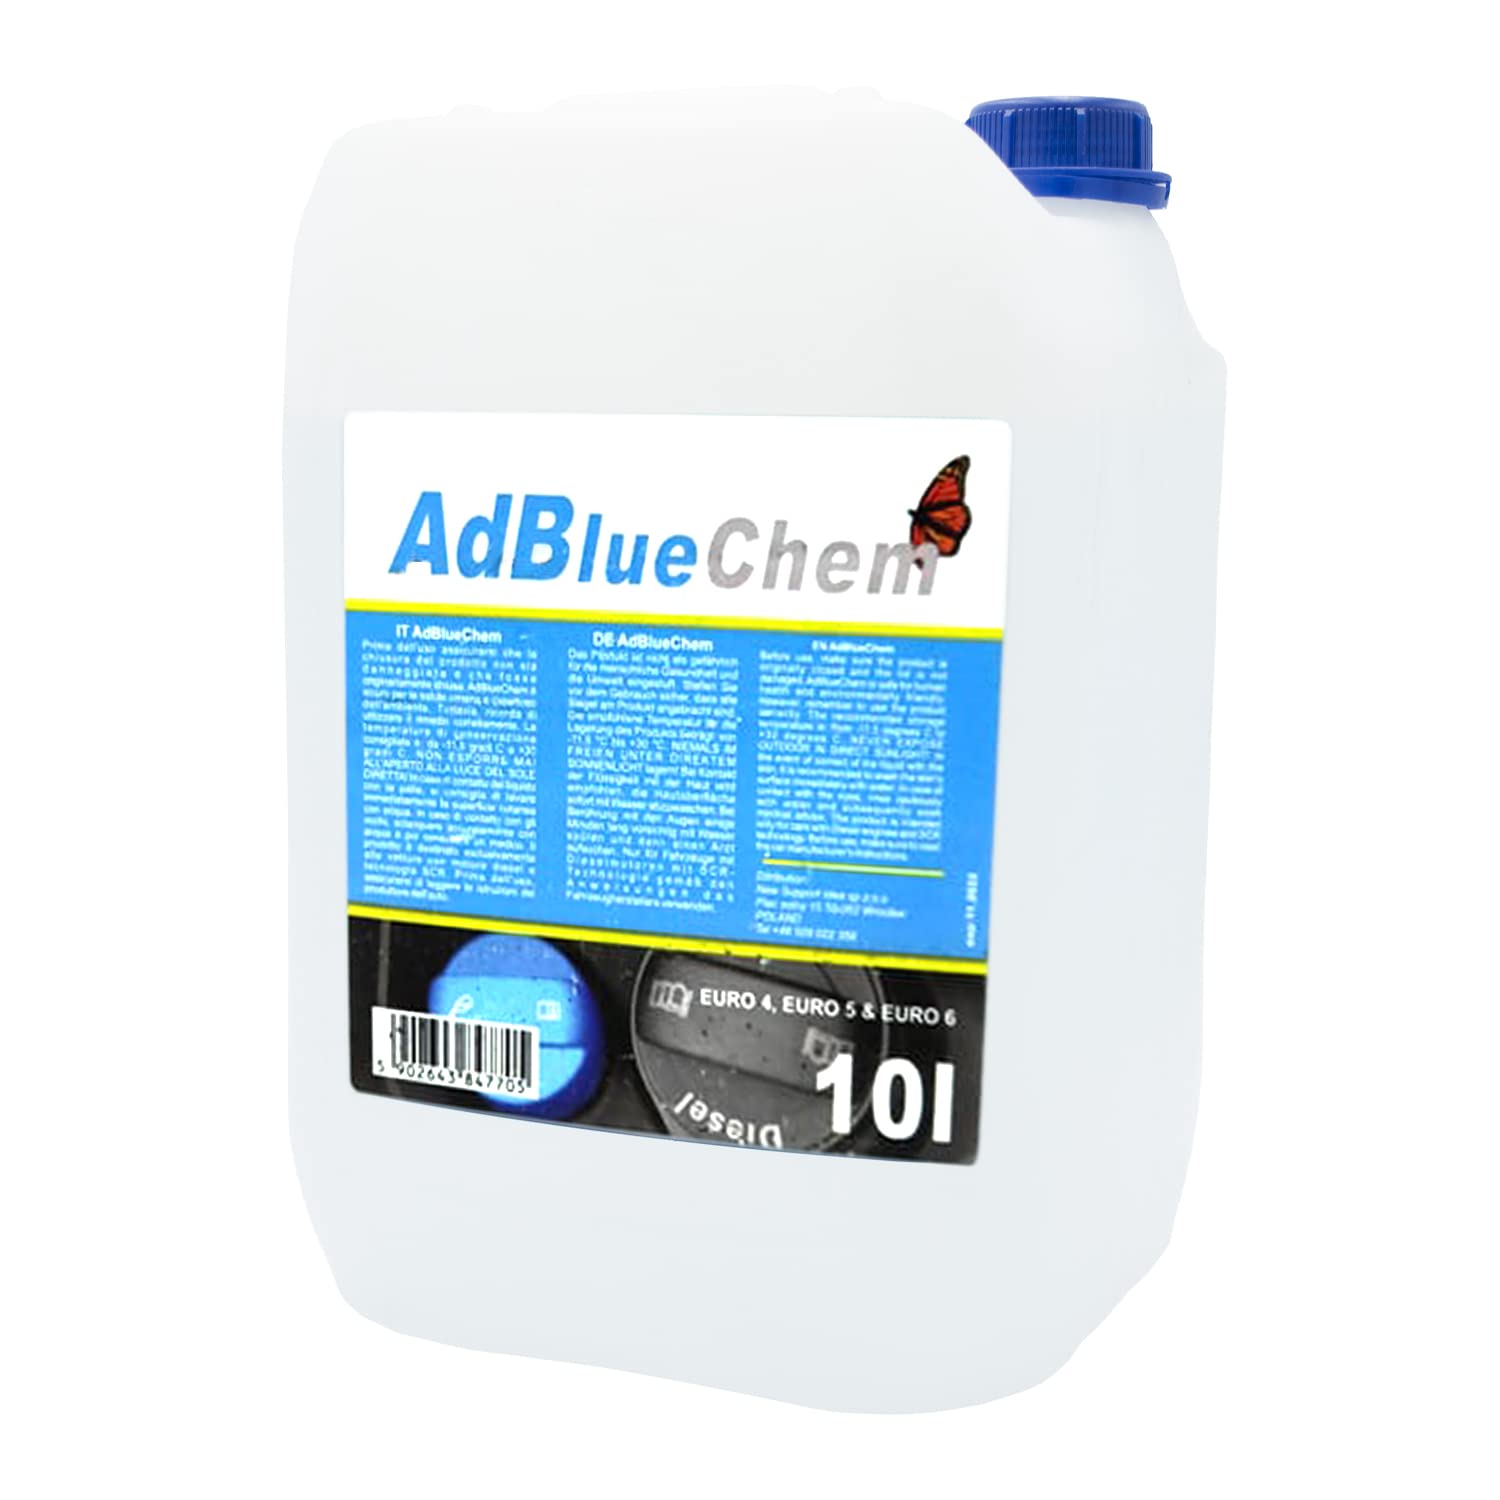 AdBlue 10 liter für Diesel Kraftreiniger additive Abgasbehandlung auf Harnstoffbasis Hochreiner Harnstoff zur Abgasnachbehandlung EURO4 EURO5 EURO6 von Kemetyl Protecton Eurol